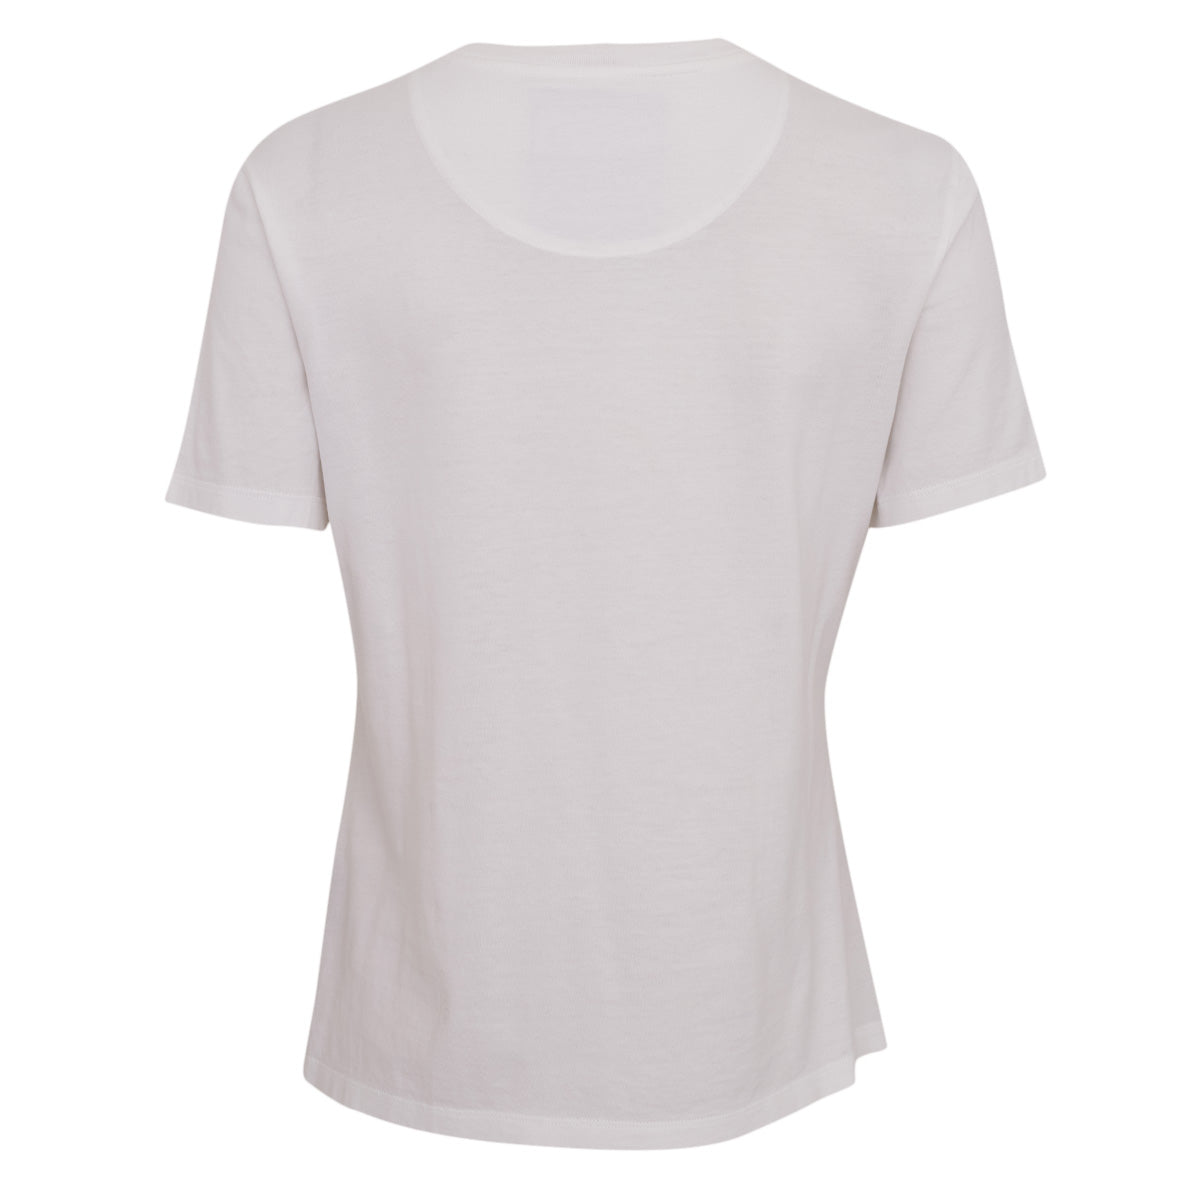 Camiseta Versace Branca Estampada Tam. 36 Br